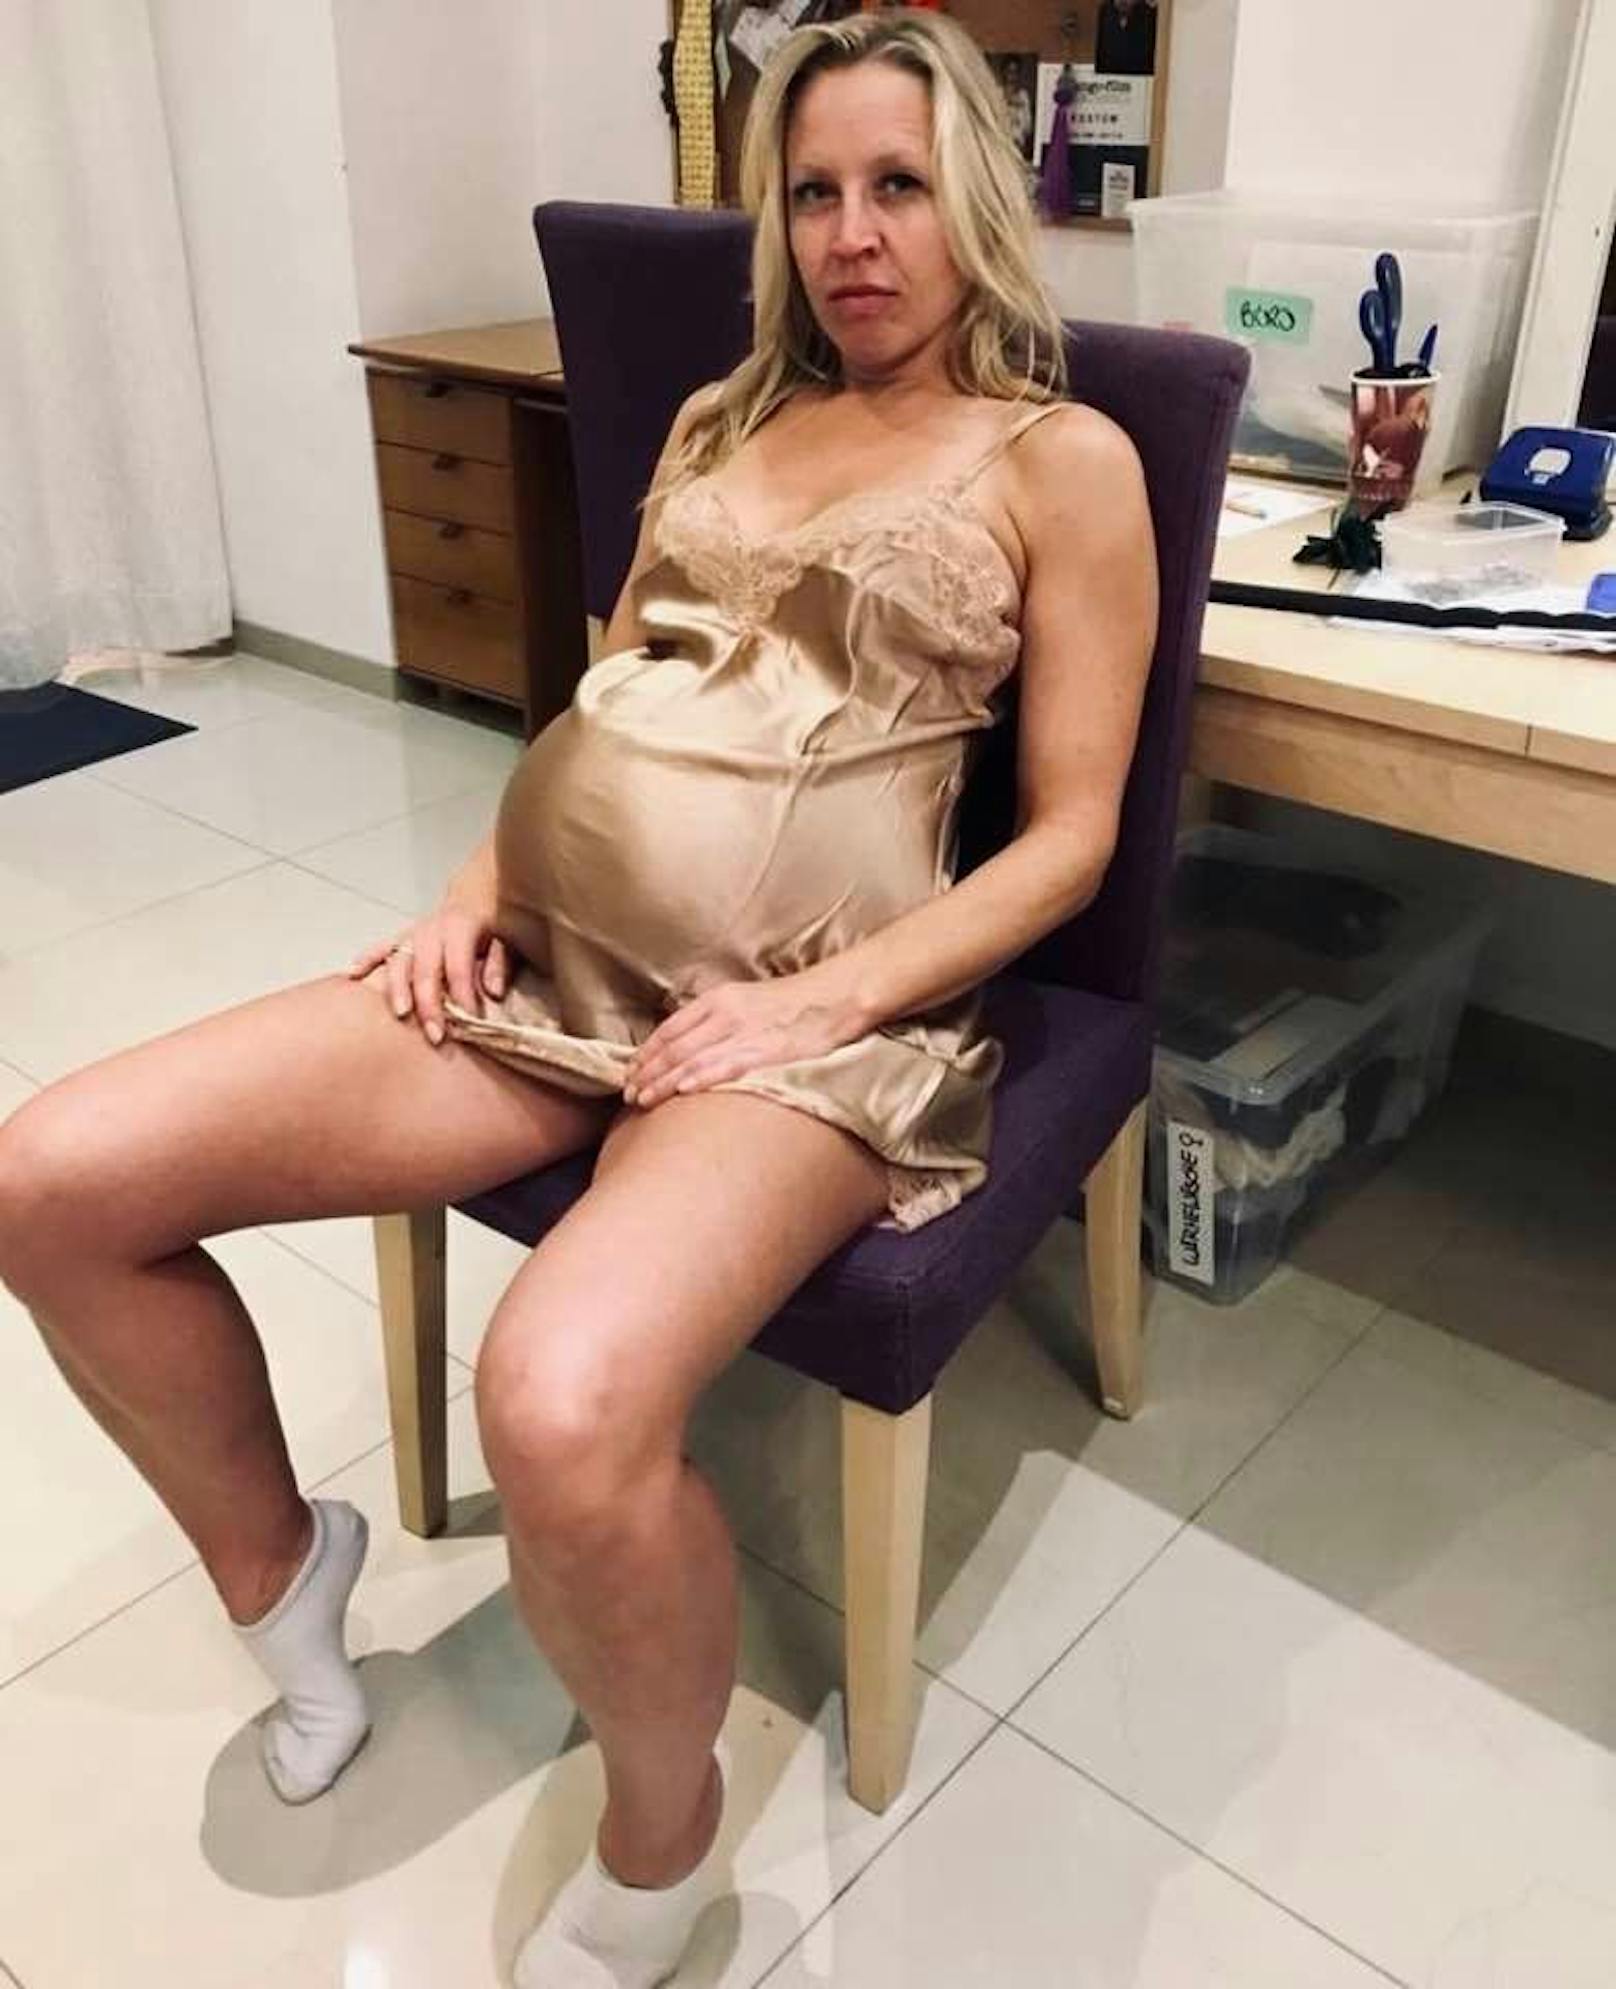 Proll schwanger? Sie zeigt Baby-Bauch auf Social-Media